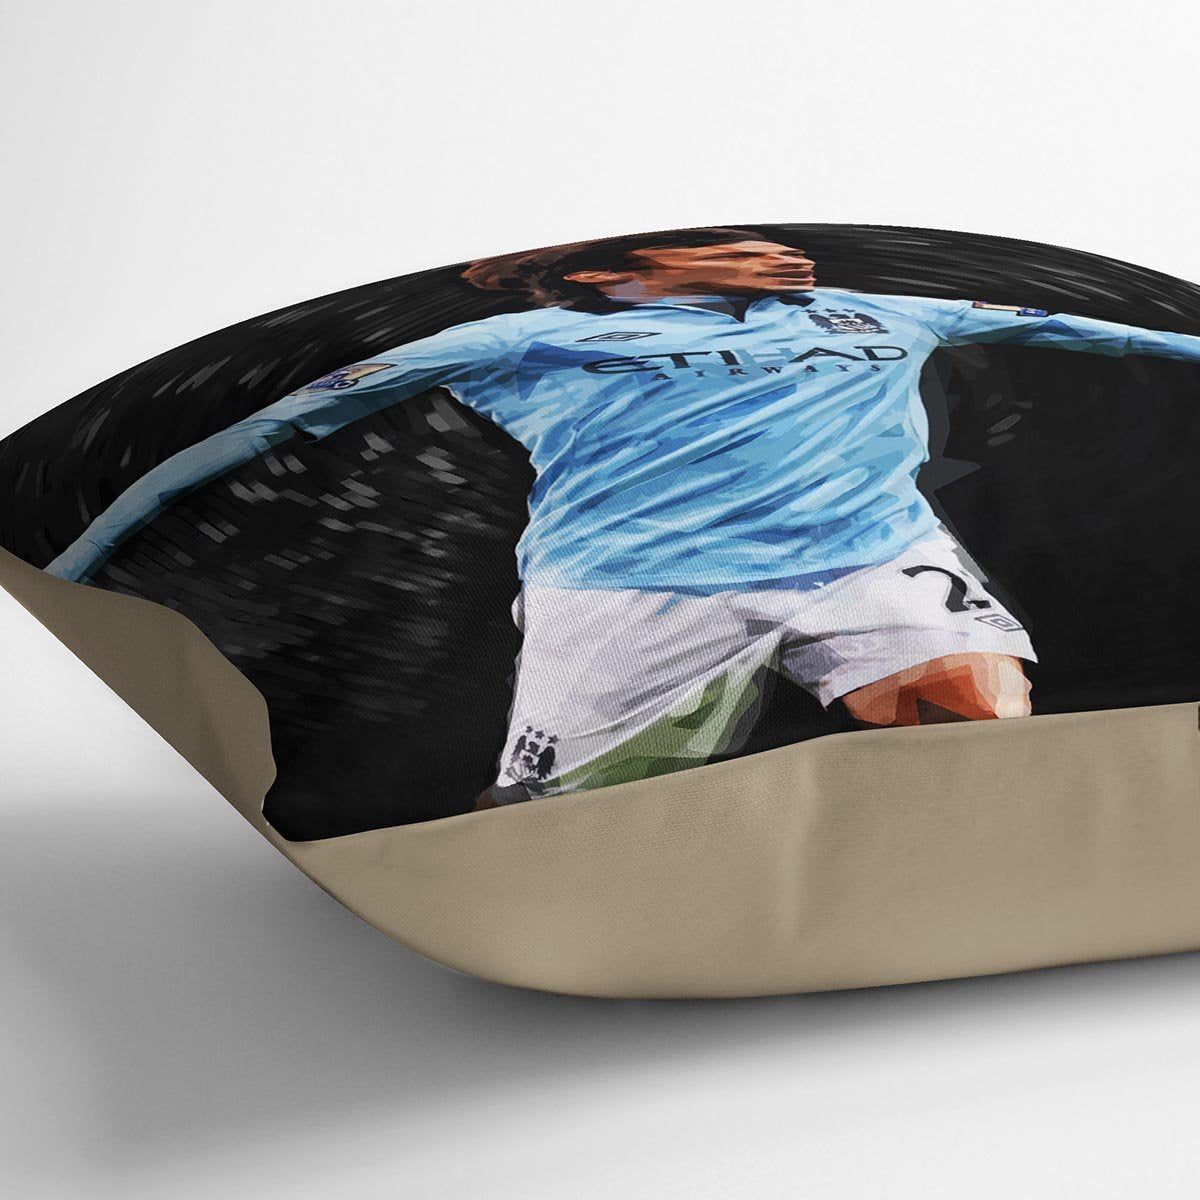 David Silva Manchester City Cushion